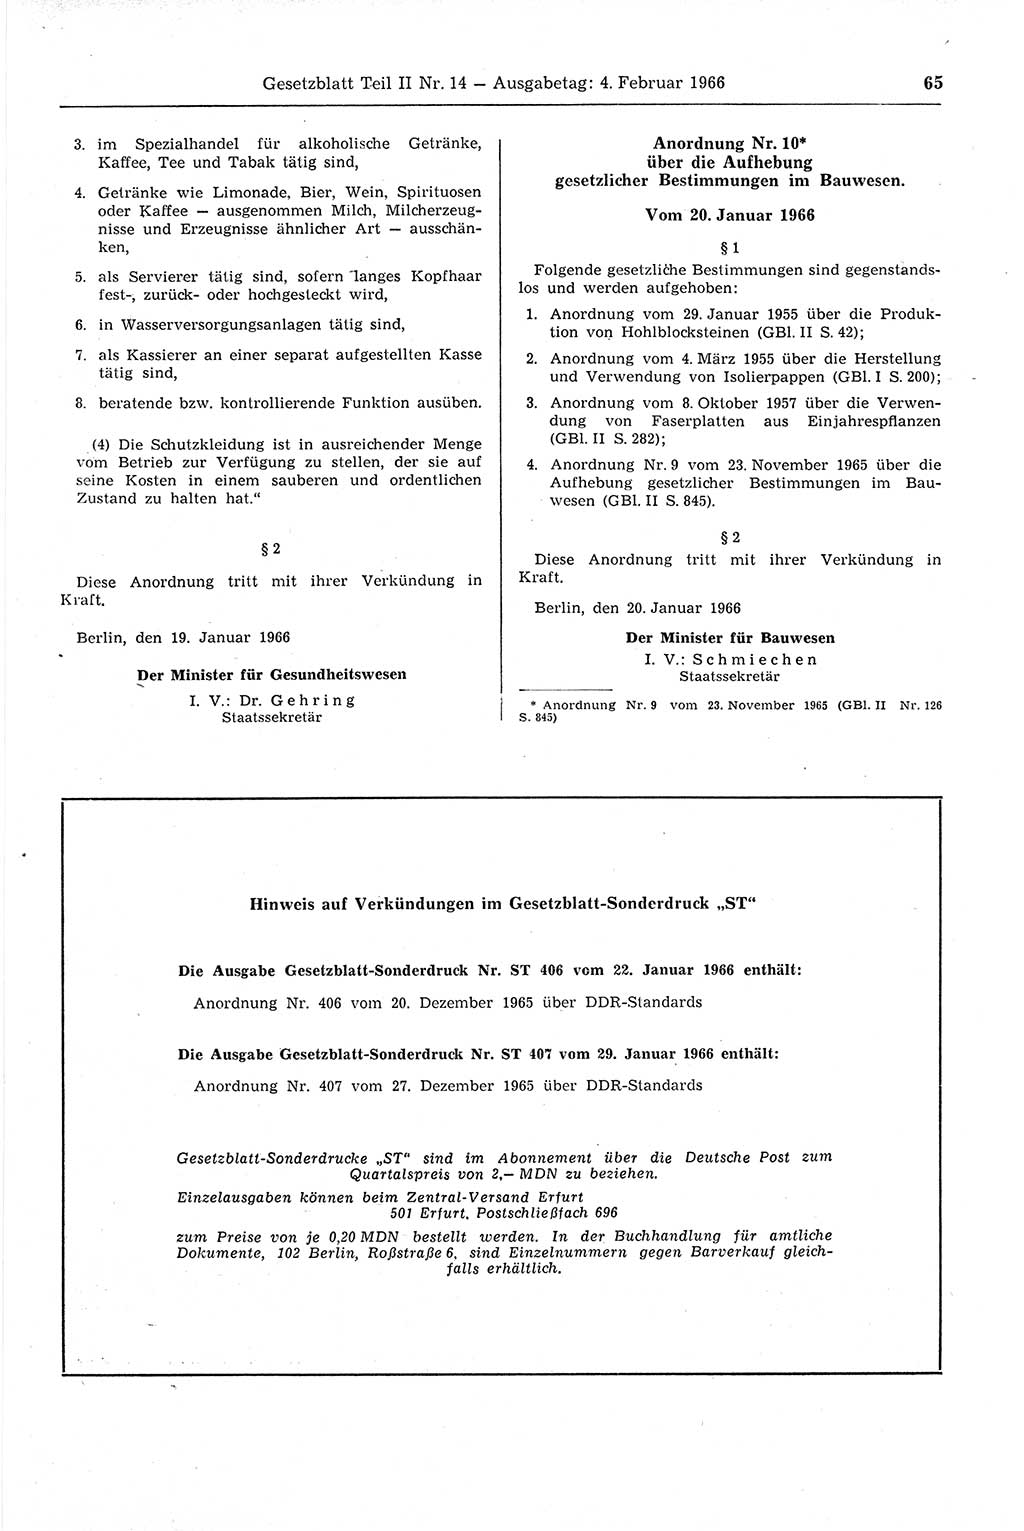 Gesetzblatt (GBl.) der Deutschen Demokratischen Republik (DDR) Teil ⅠⅠ 1966, Seite 65 (GBl. DDR ⅠⅠ 1966, S. 65)